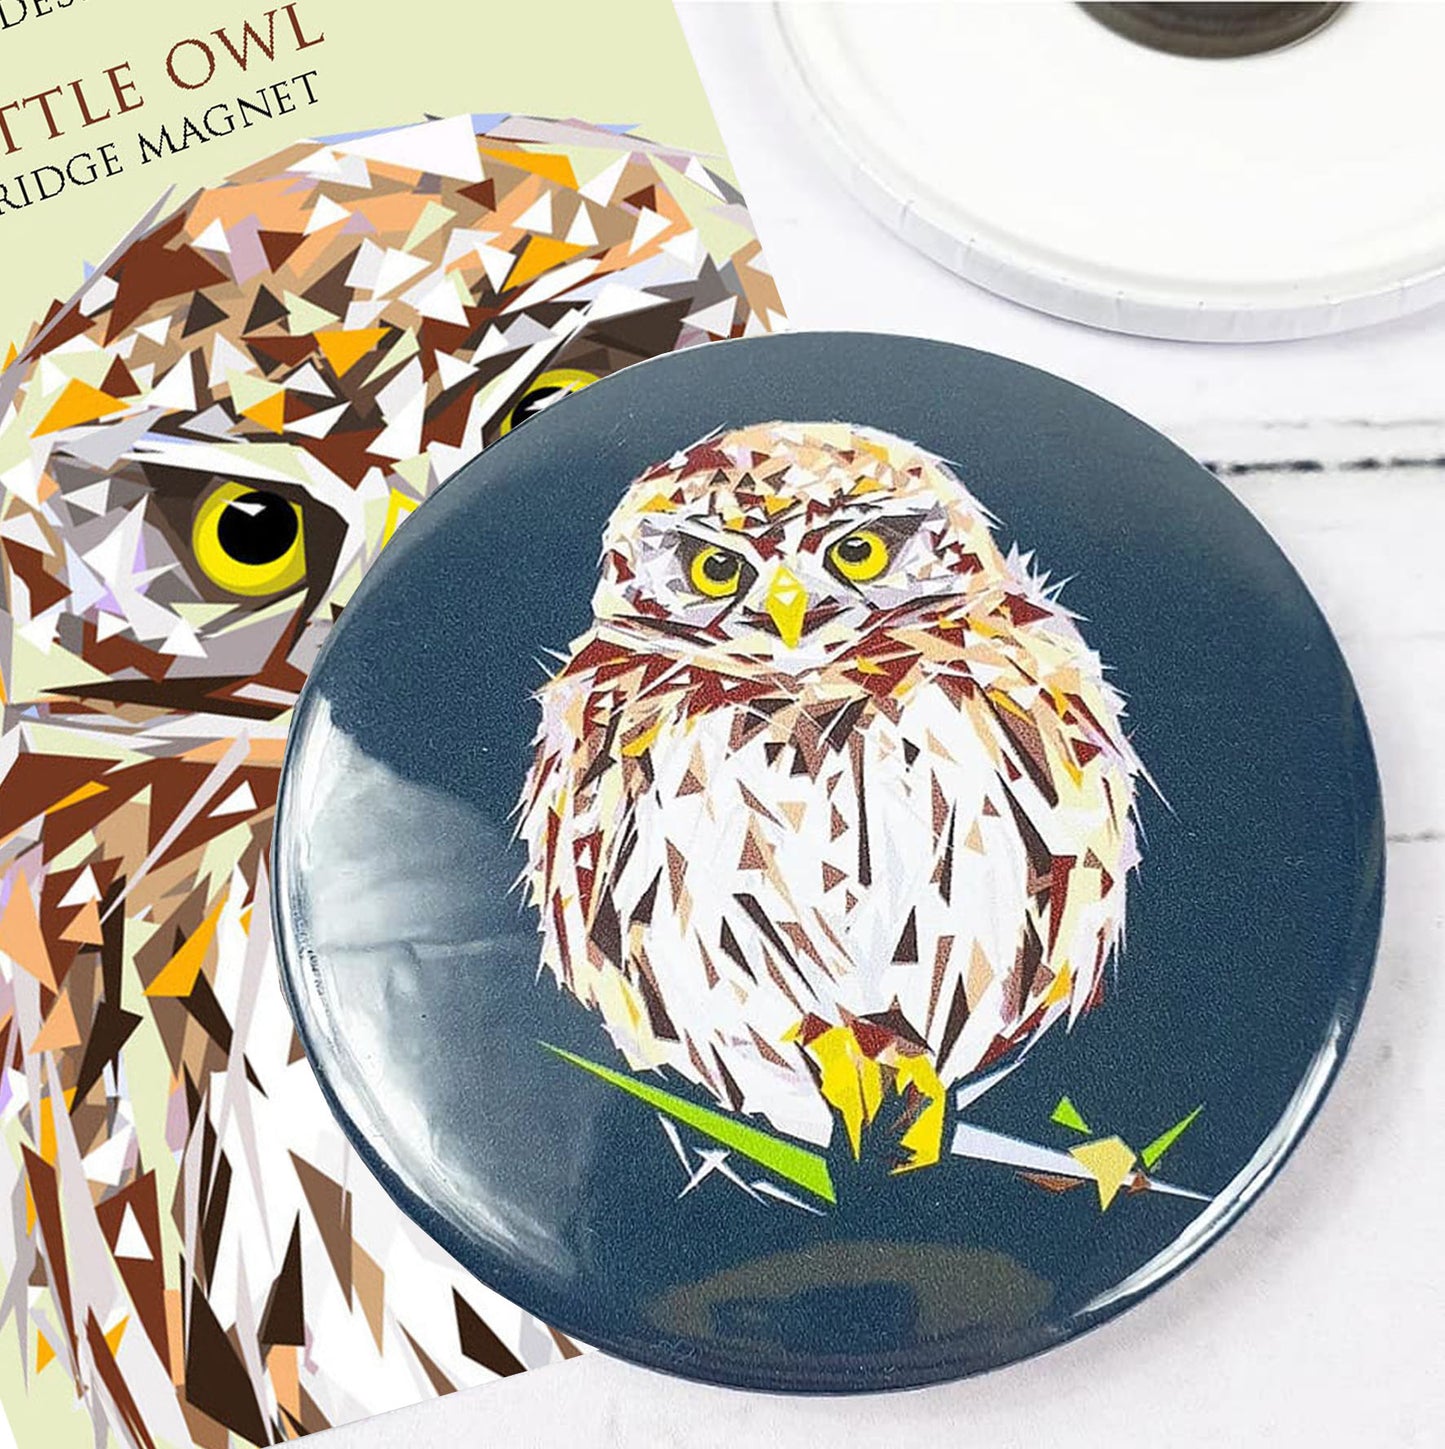 LITTLE OWL magnet